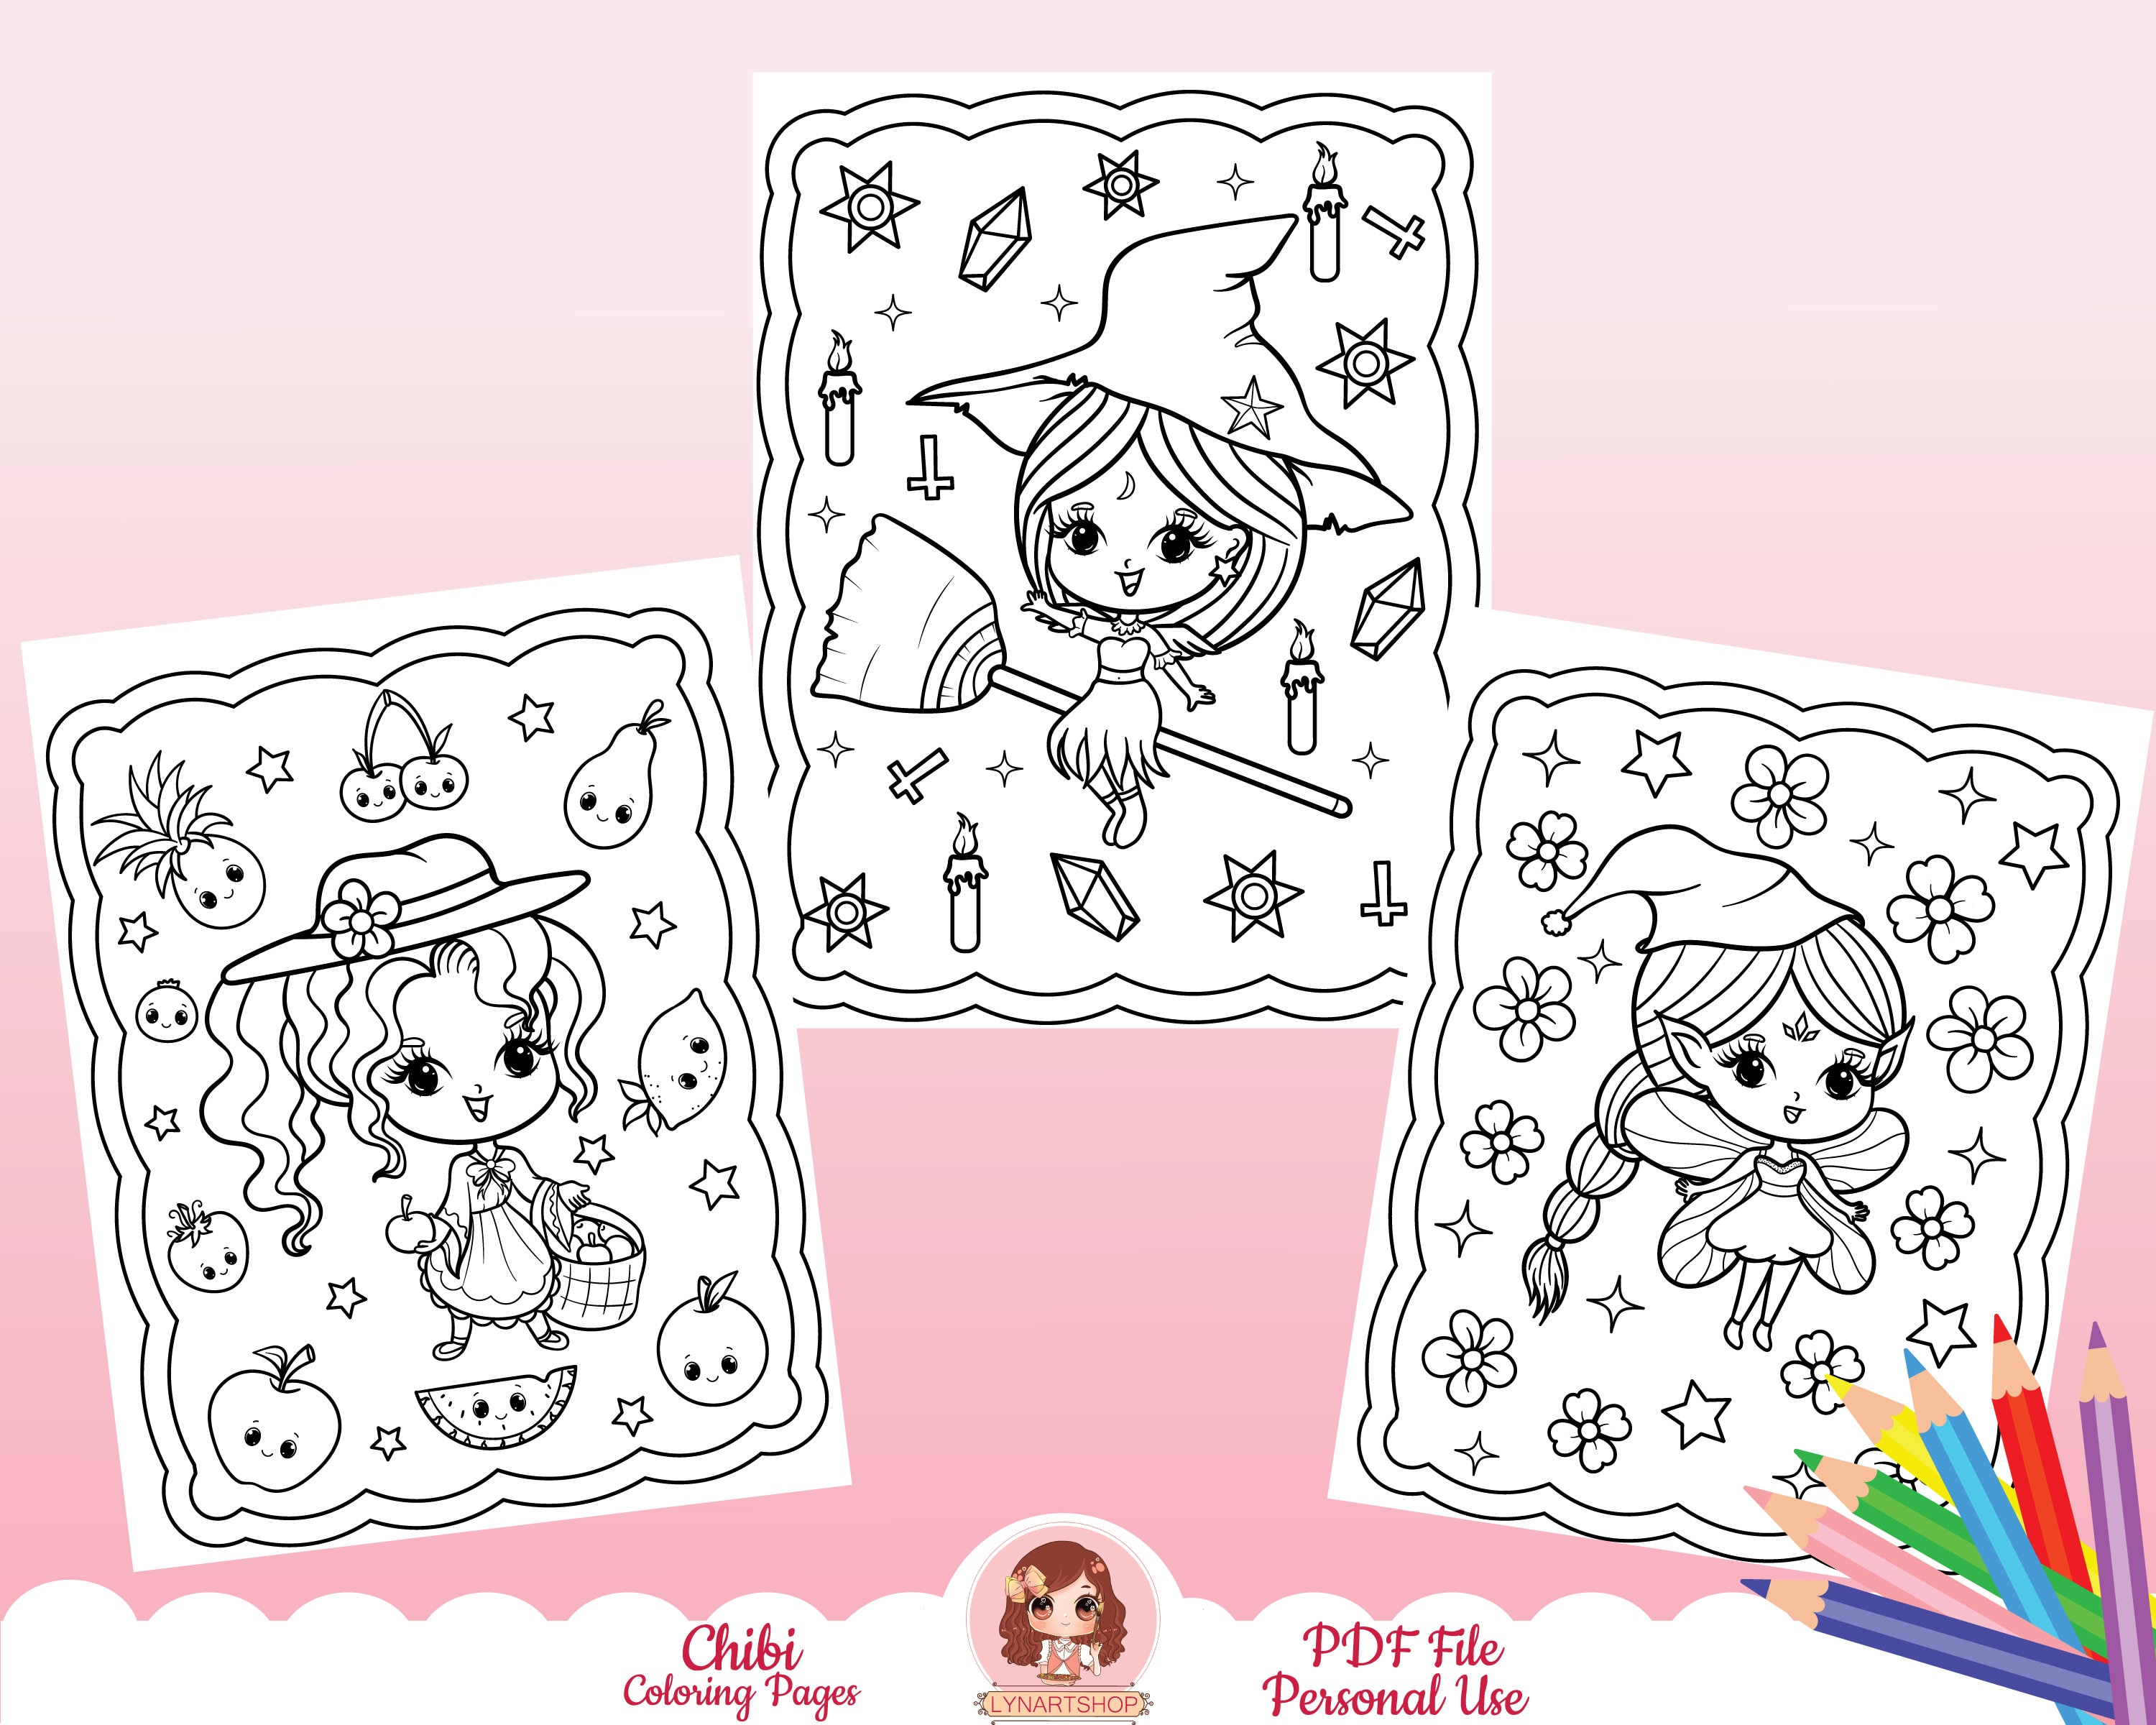 cartoon girl cute princess doodle kawaii coloring pages